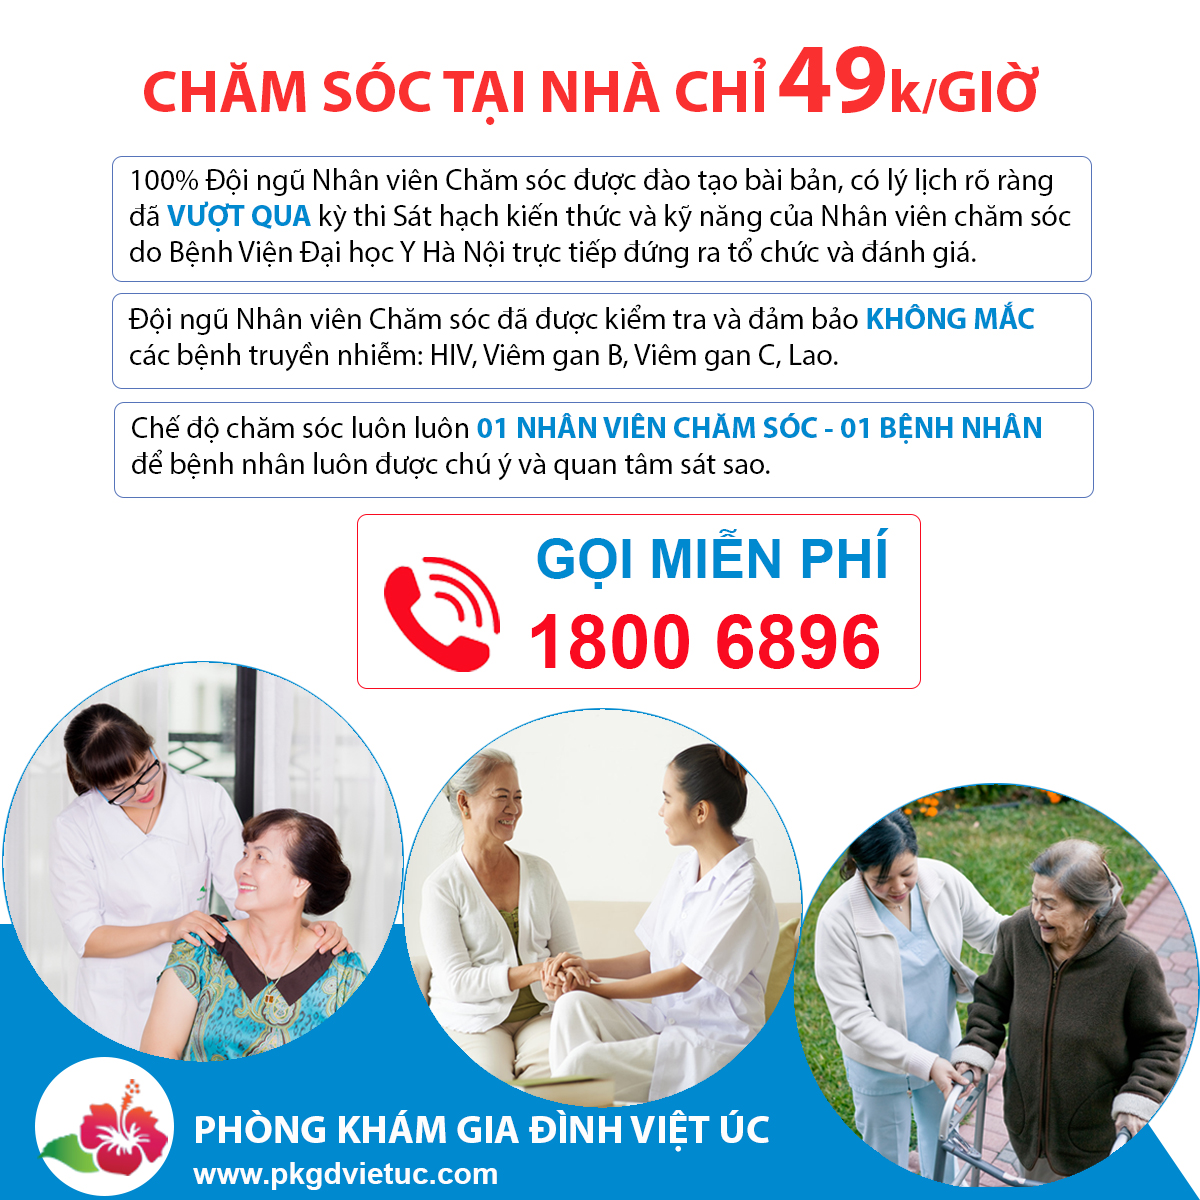 Dịch vụ chăm sóc tại nhà tại Việt Úc